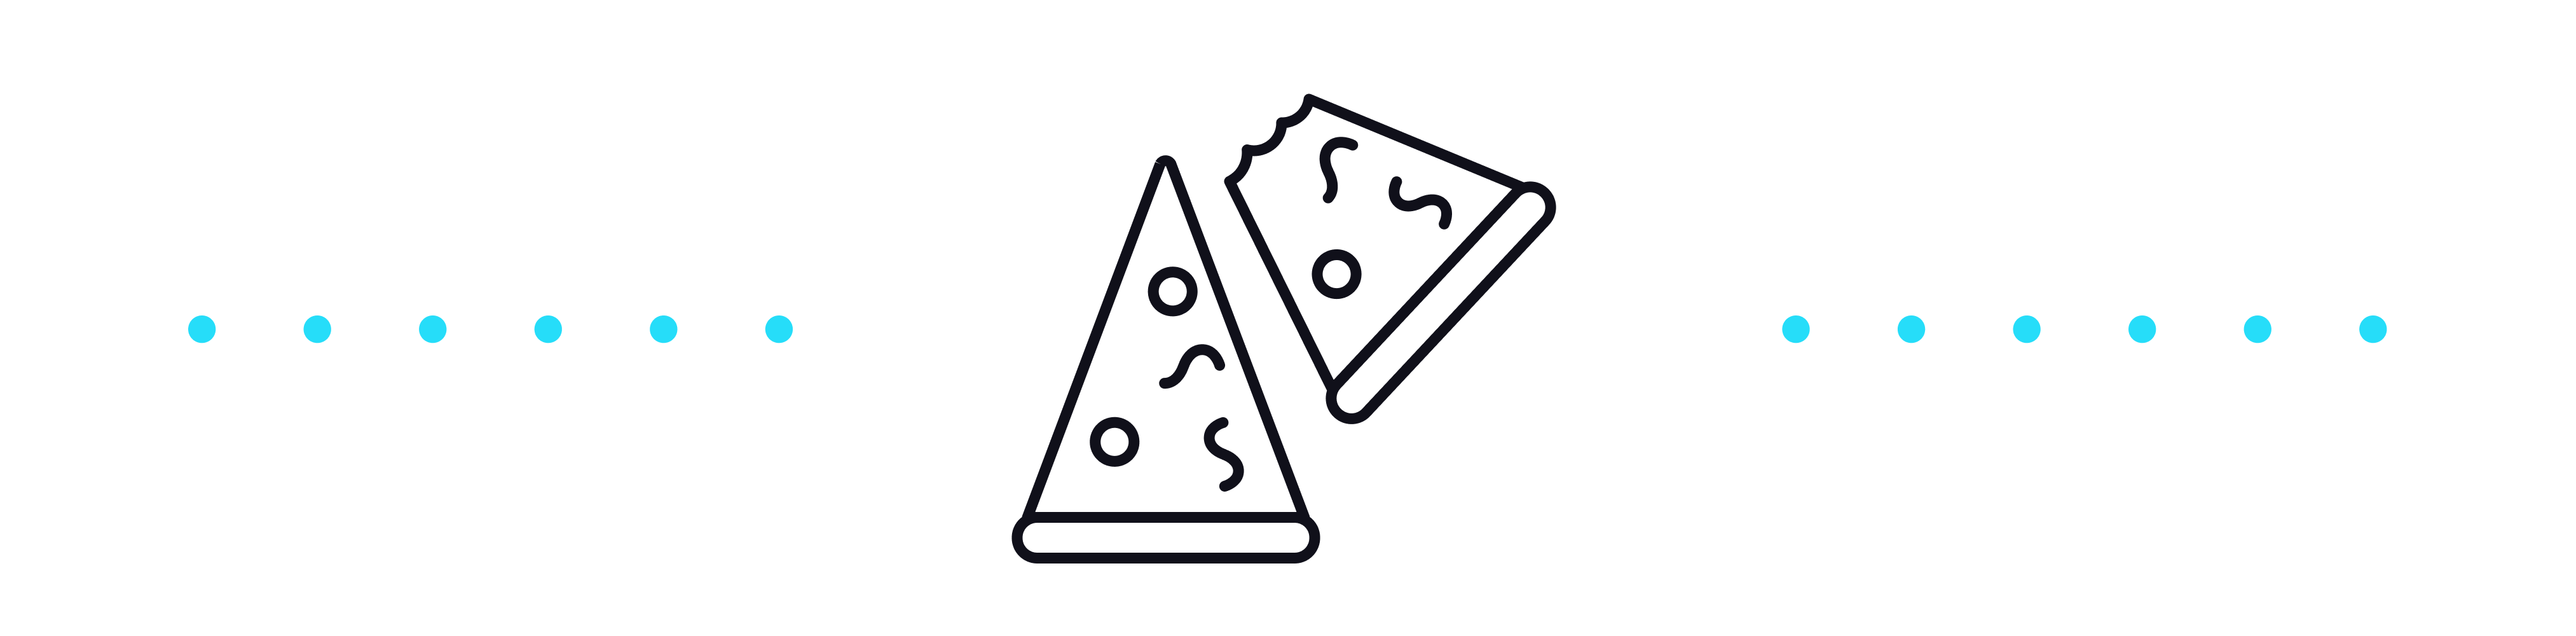 bitcoin pizza